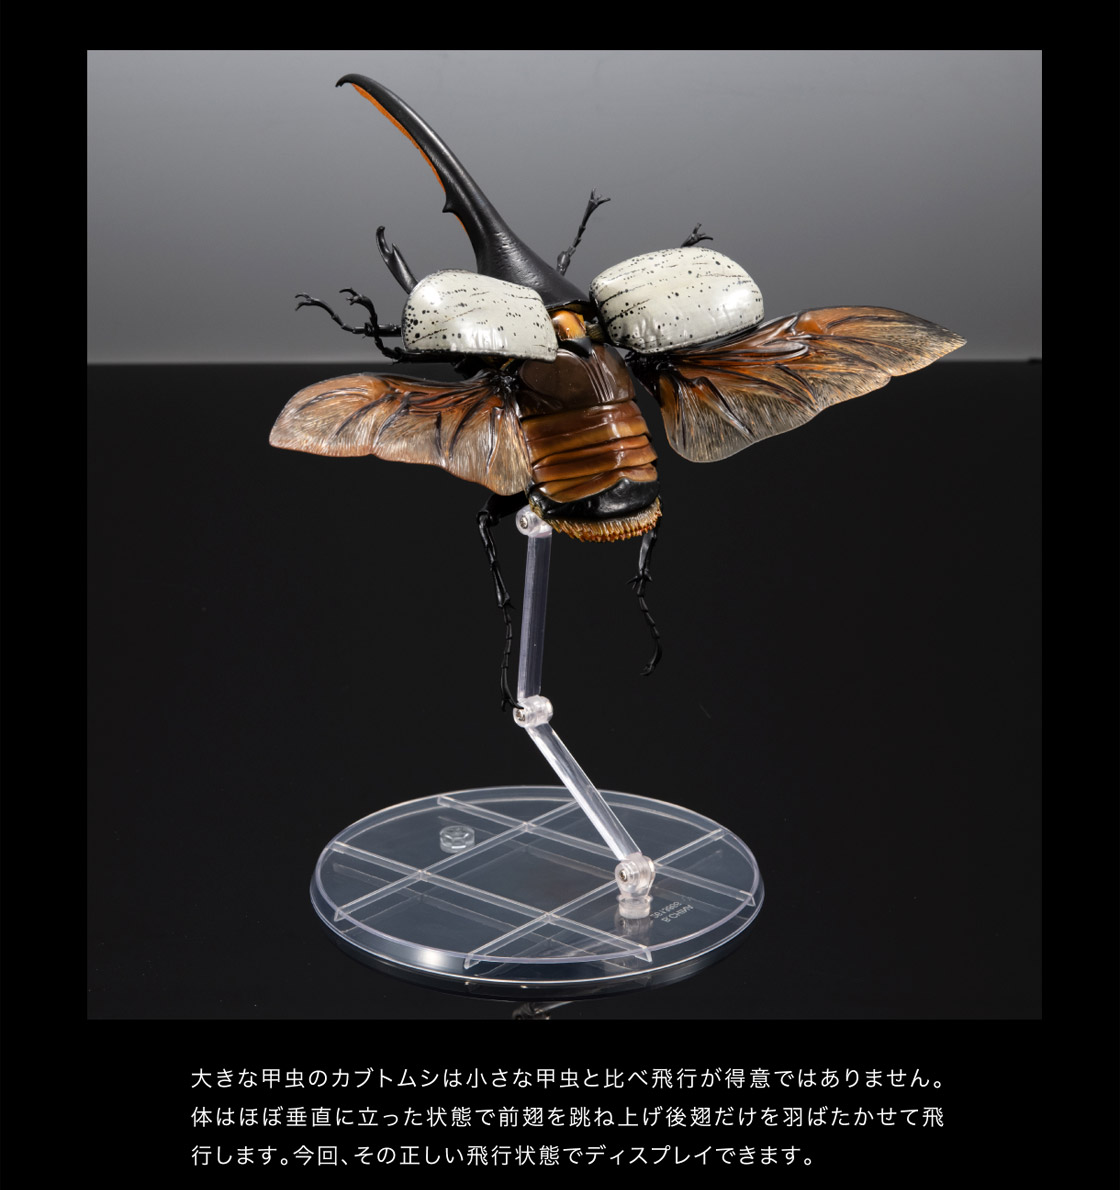 大きな甲虫のカブトムシは小さな甲虫と比べ飛行が得意ではありません。